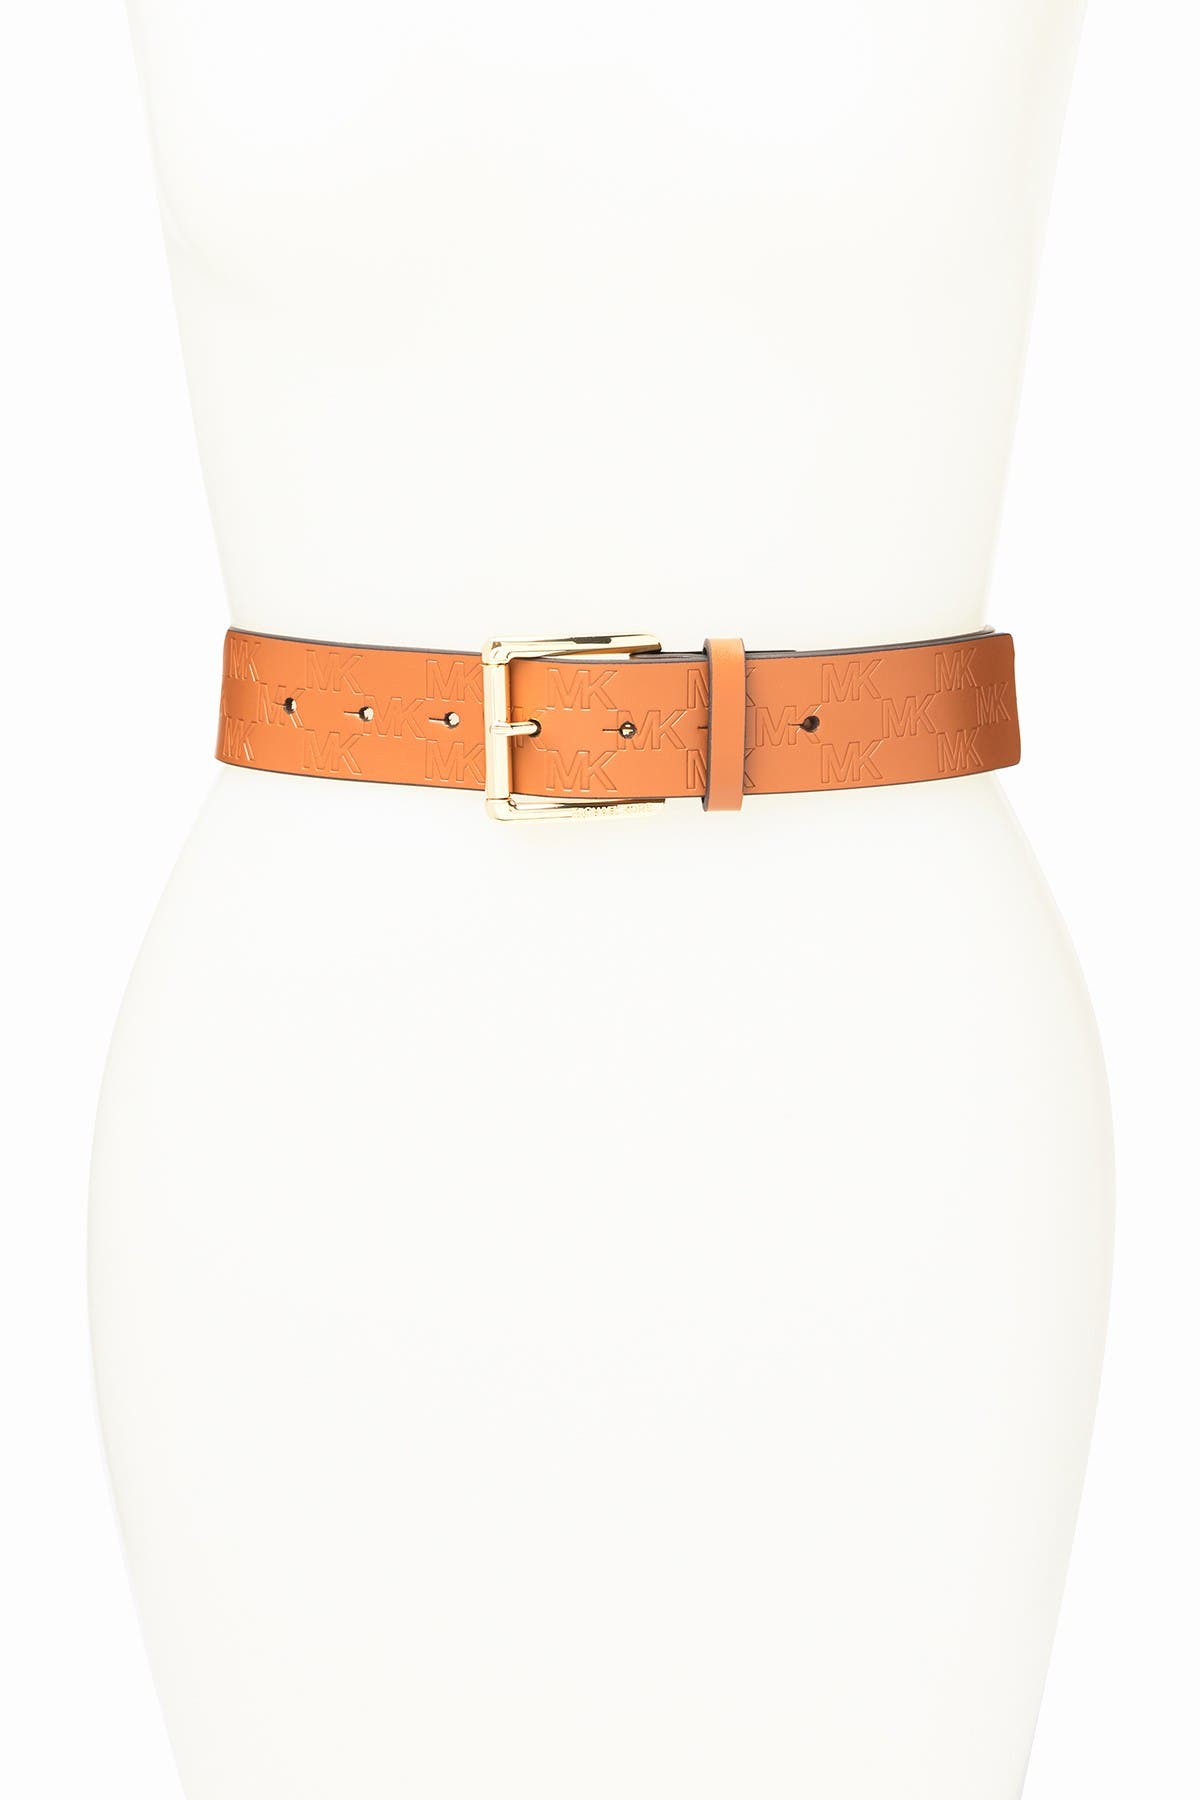 mk waist belt